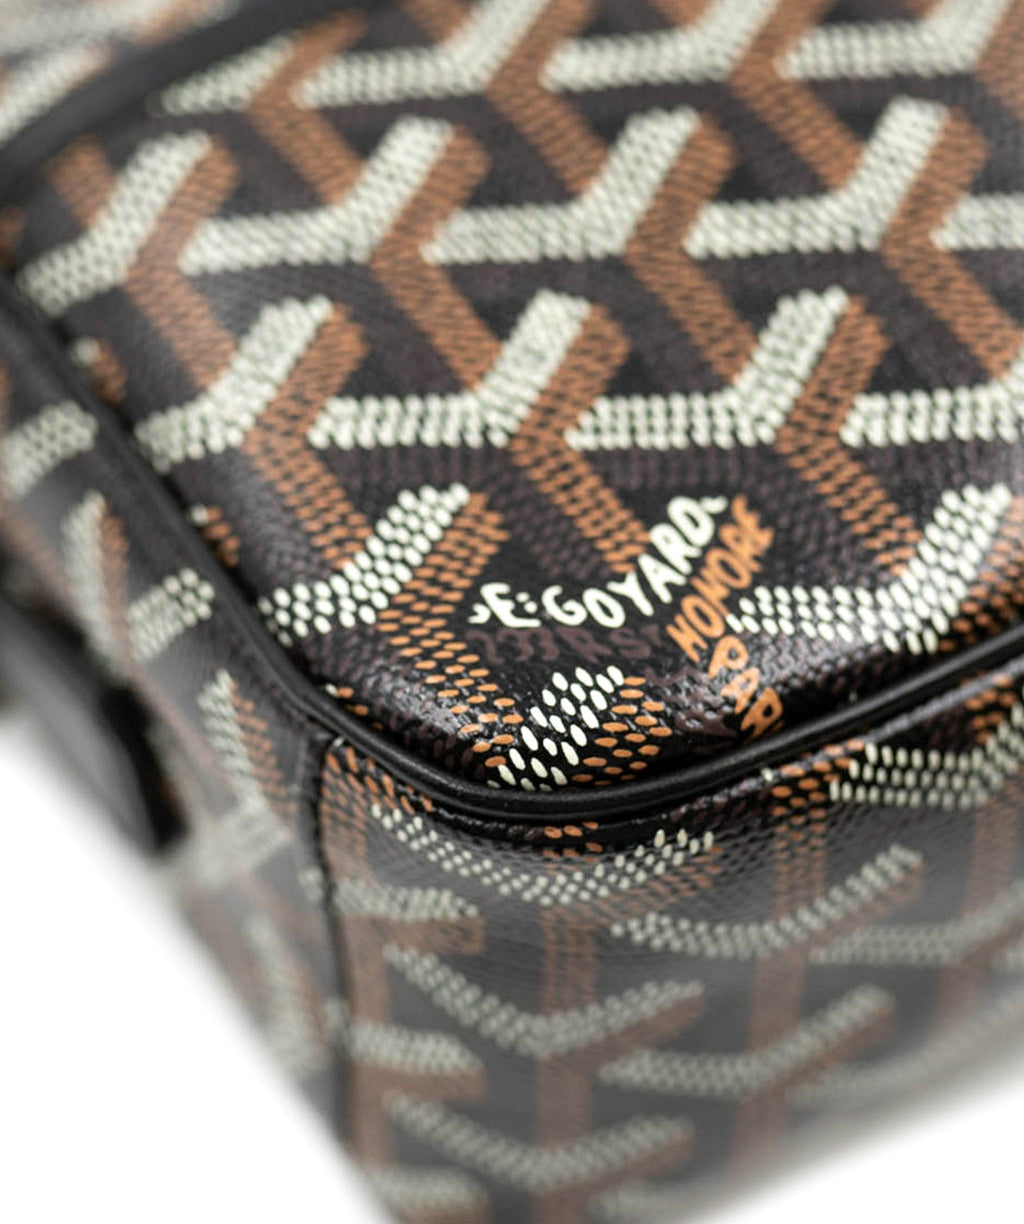 Goyard Cap - Vert PM Black Bag Backpack – Crepslocker - backpack coccinelle  h60 lea e1 h60 14 01 01 ink